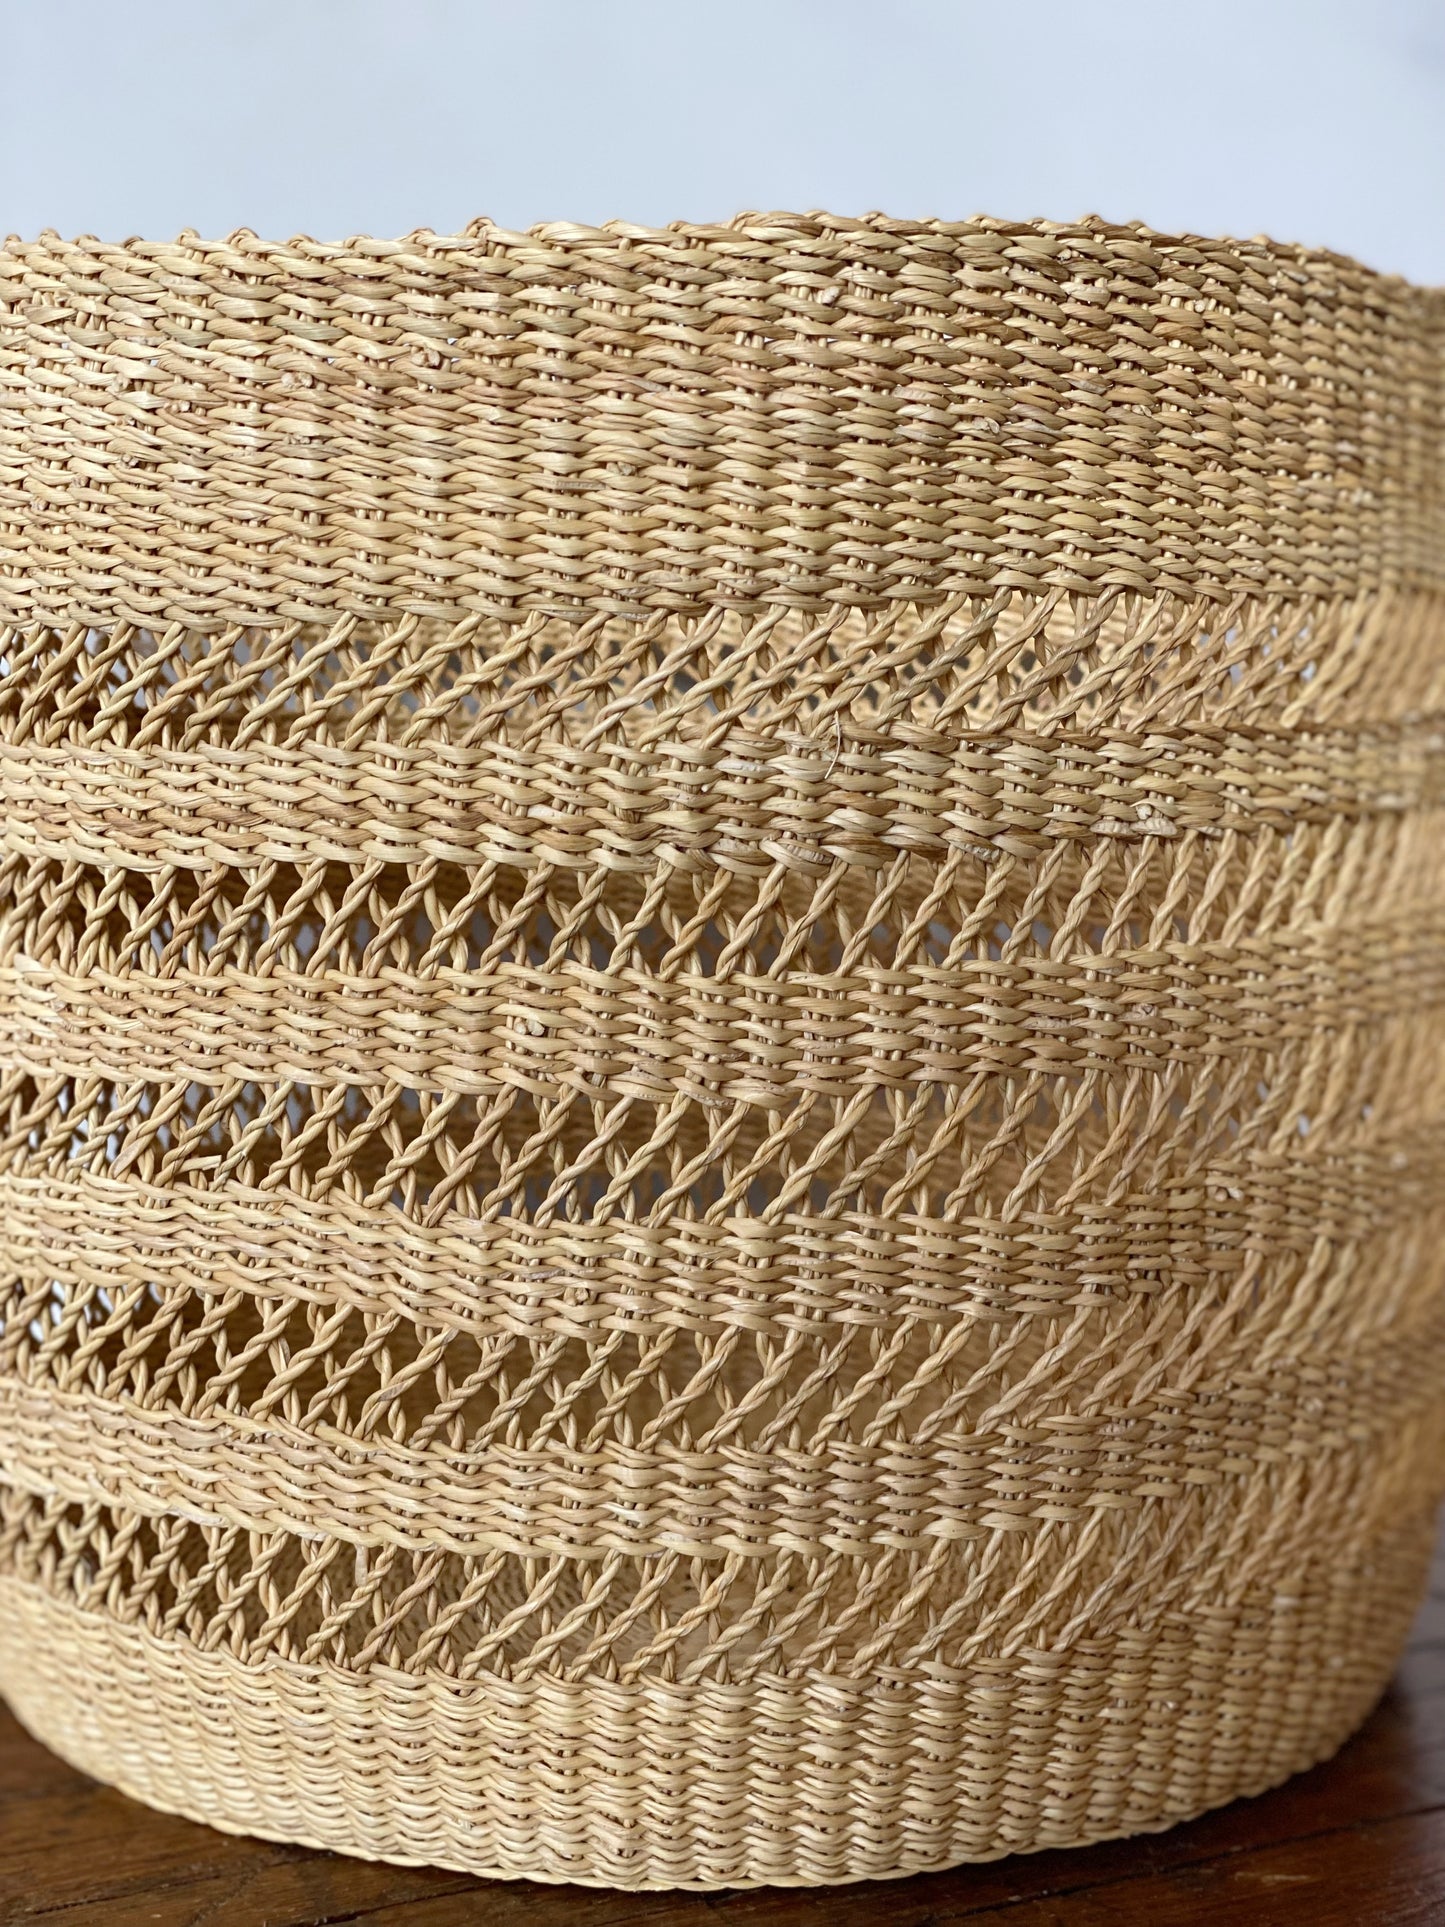 Lace Weave Basket